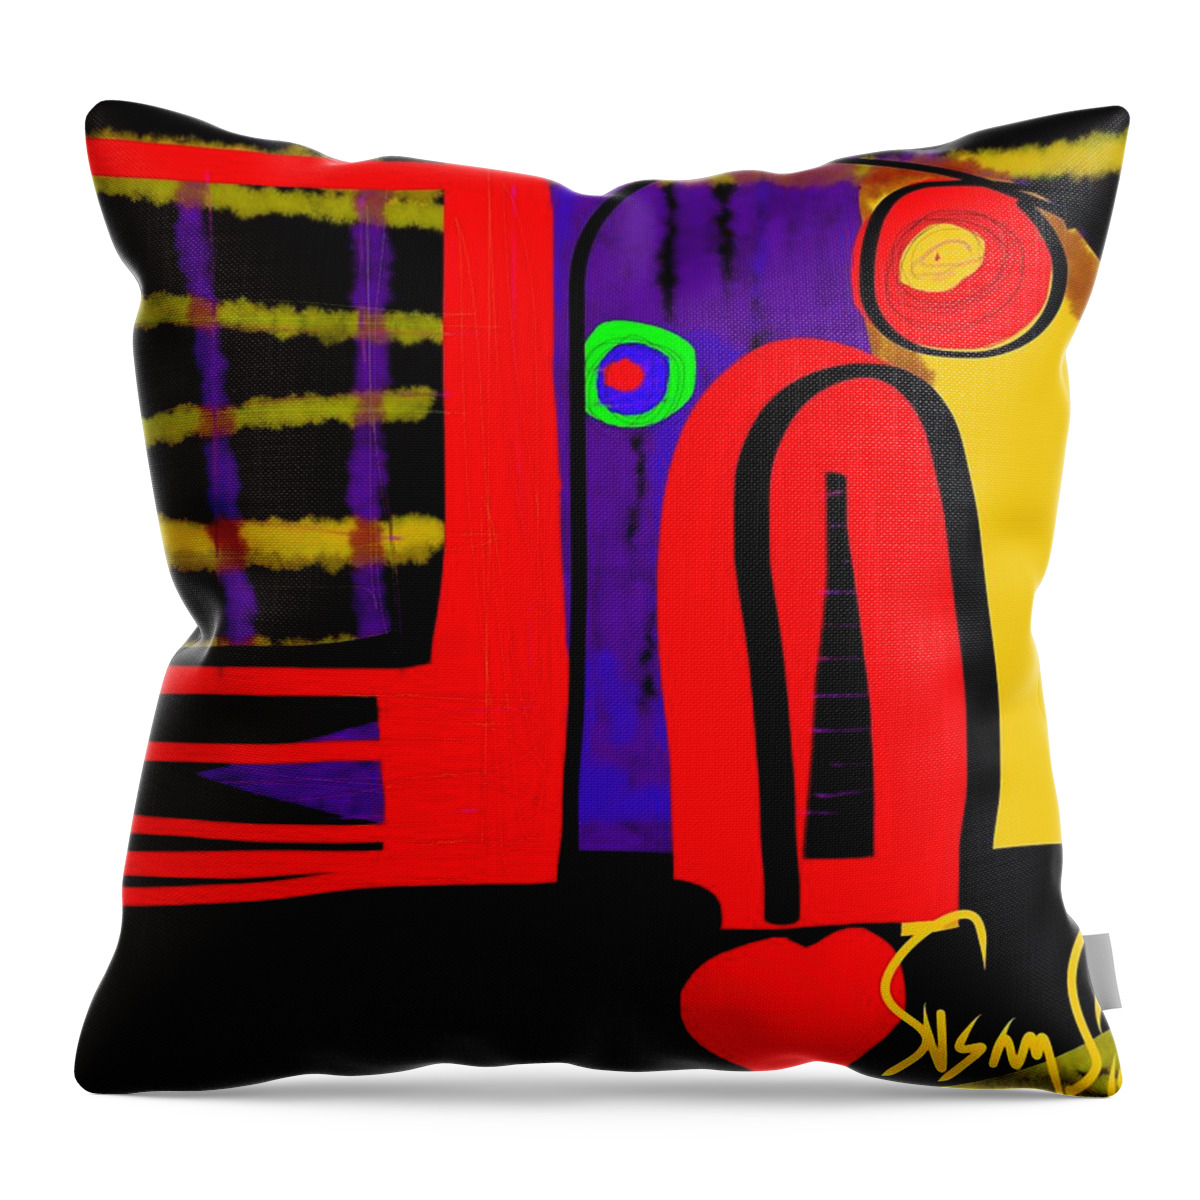 Stir Throw Pillow featuring the digital art Stir Crazy by Susan Fielder